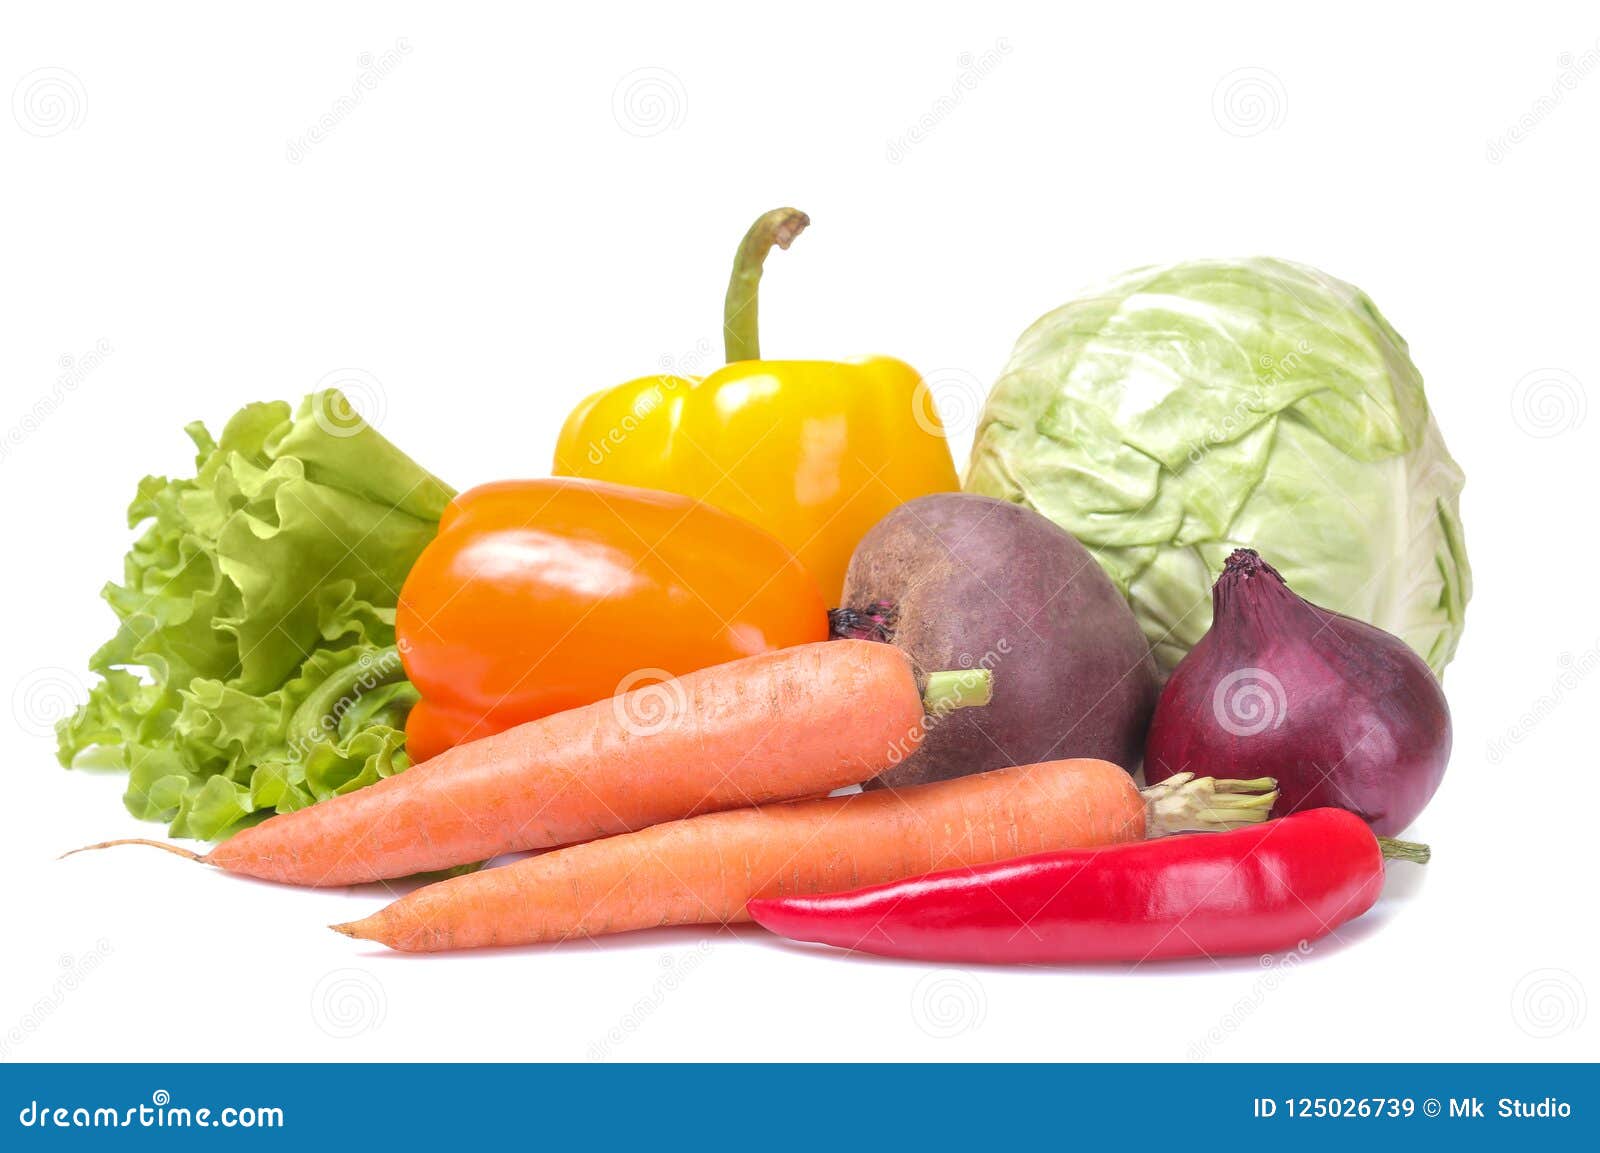 Skymsen El Salvador - Picar zanahoria, repollo, cebolla para tu